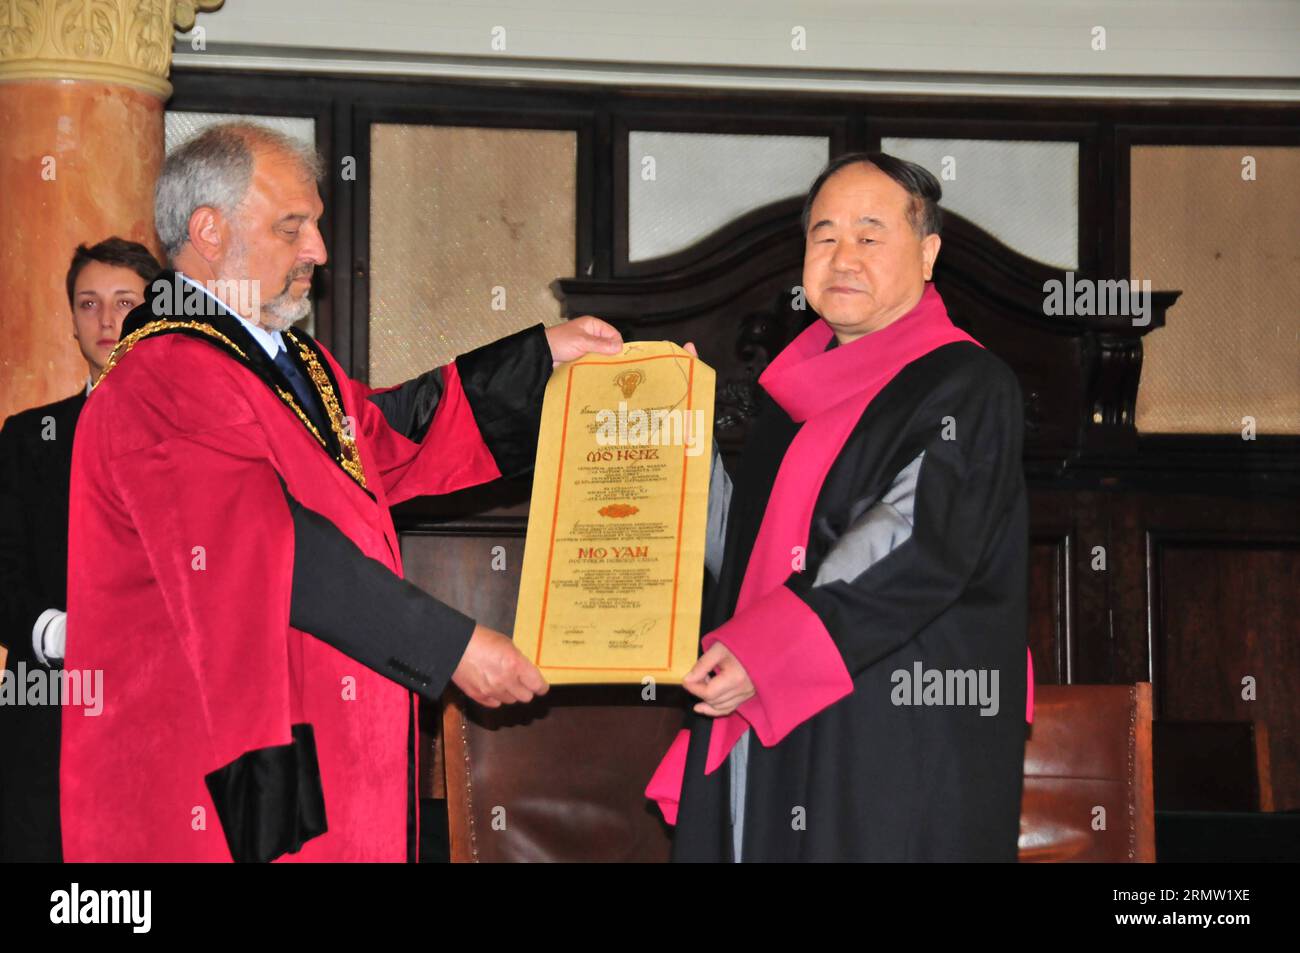 Le célèbre écrivain chinois Mo Yan présente la certification du diplôme honorifique Docteur Honoris Causa avec le professeur Ivan Ilchev, recteur de l'Université de Sofia à Sofia, Bulgarie, le 27 septembre 2014. Mo Yan, un écrivain chinois et lauréat du prix Nobel, ici samedi a reçu le diplôme honorifique Docteur Honoris Causa, le plus grand honneur de l'Université de Sofia St. Kliment Ohridski.) (yc) BULGARIA-SOFIA-CHINA-CULTURE-Mo YAN WangxXinran PUBLICATIONxNOTxINxCHN célèbre écrivain chinois Mo Yan affiche la certification du diplôme honorifique Docteur honoris Causa avec le Prof Ivan Recteur de l'Université de Sofia en Banque D'Images